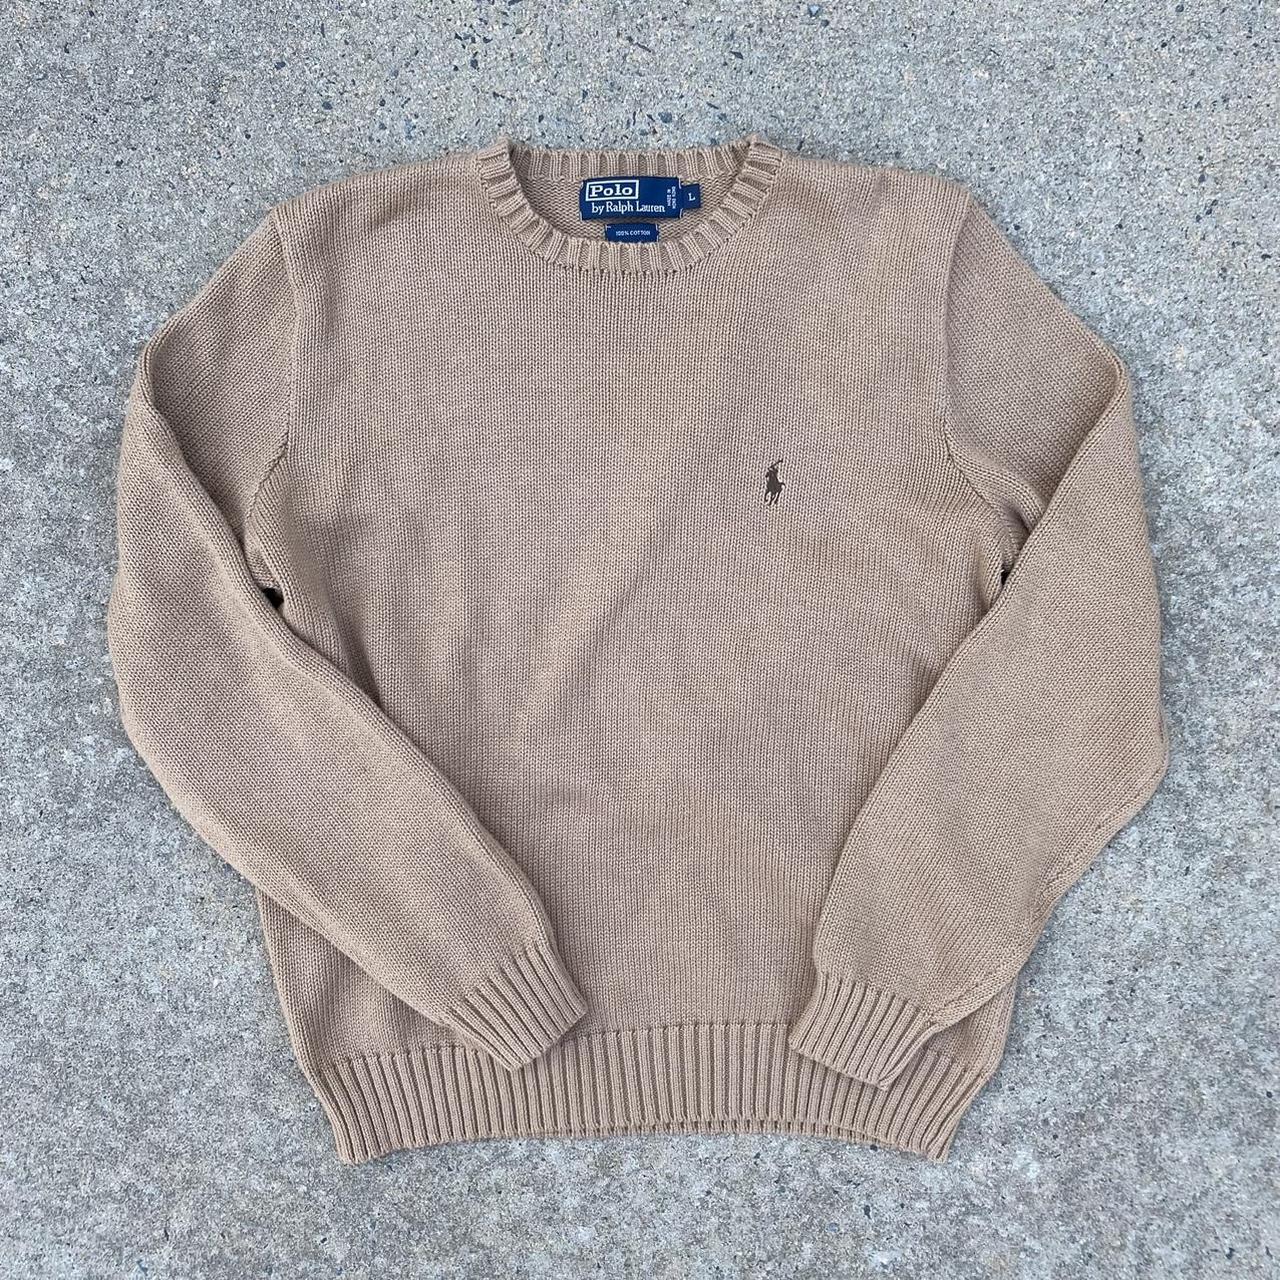 Vintage Polo Ralph Lauren Knit Sweater 100% Cotton... - Depop